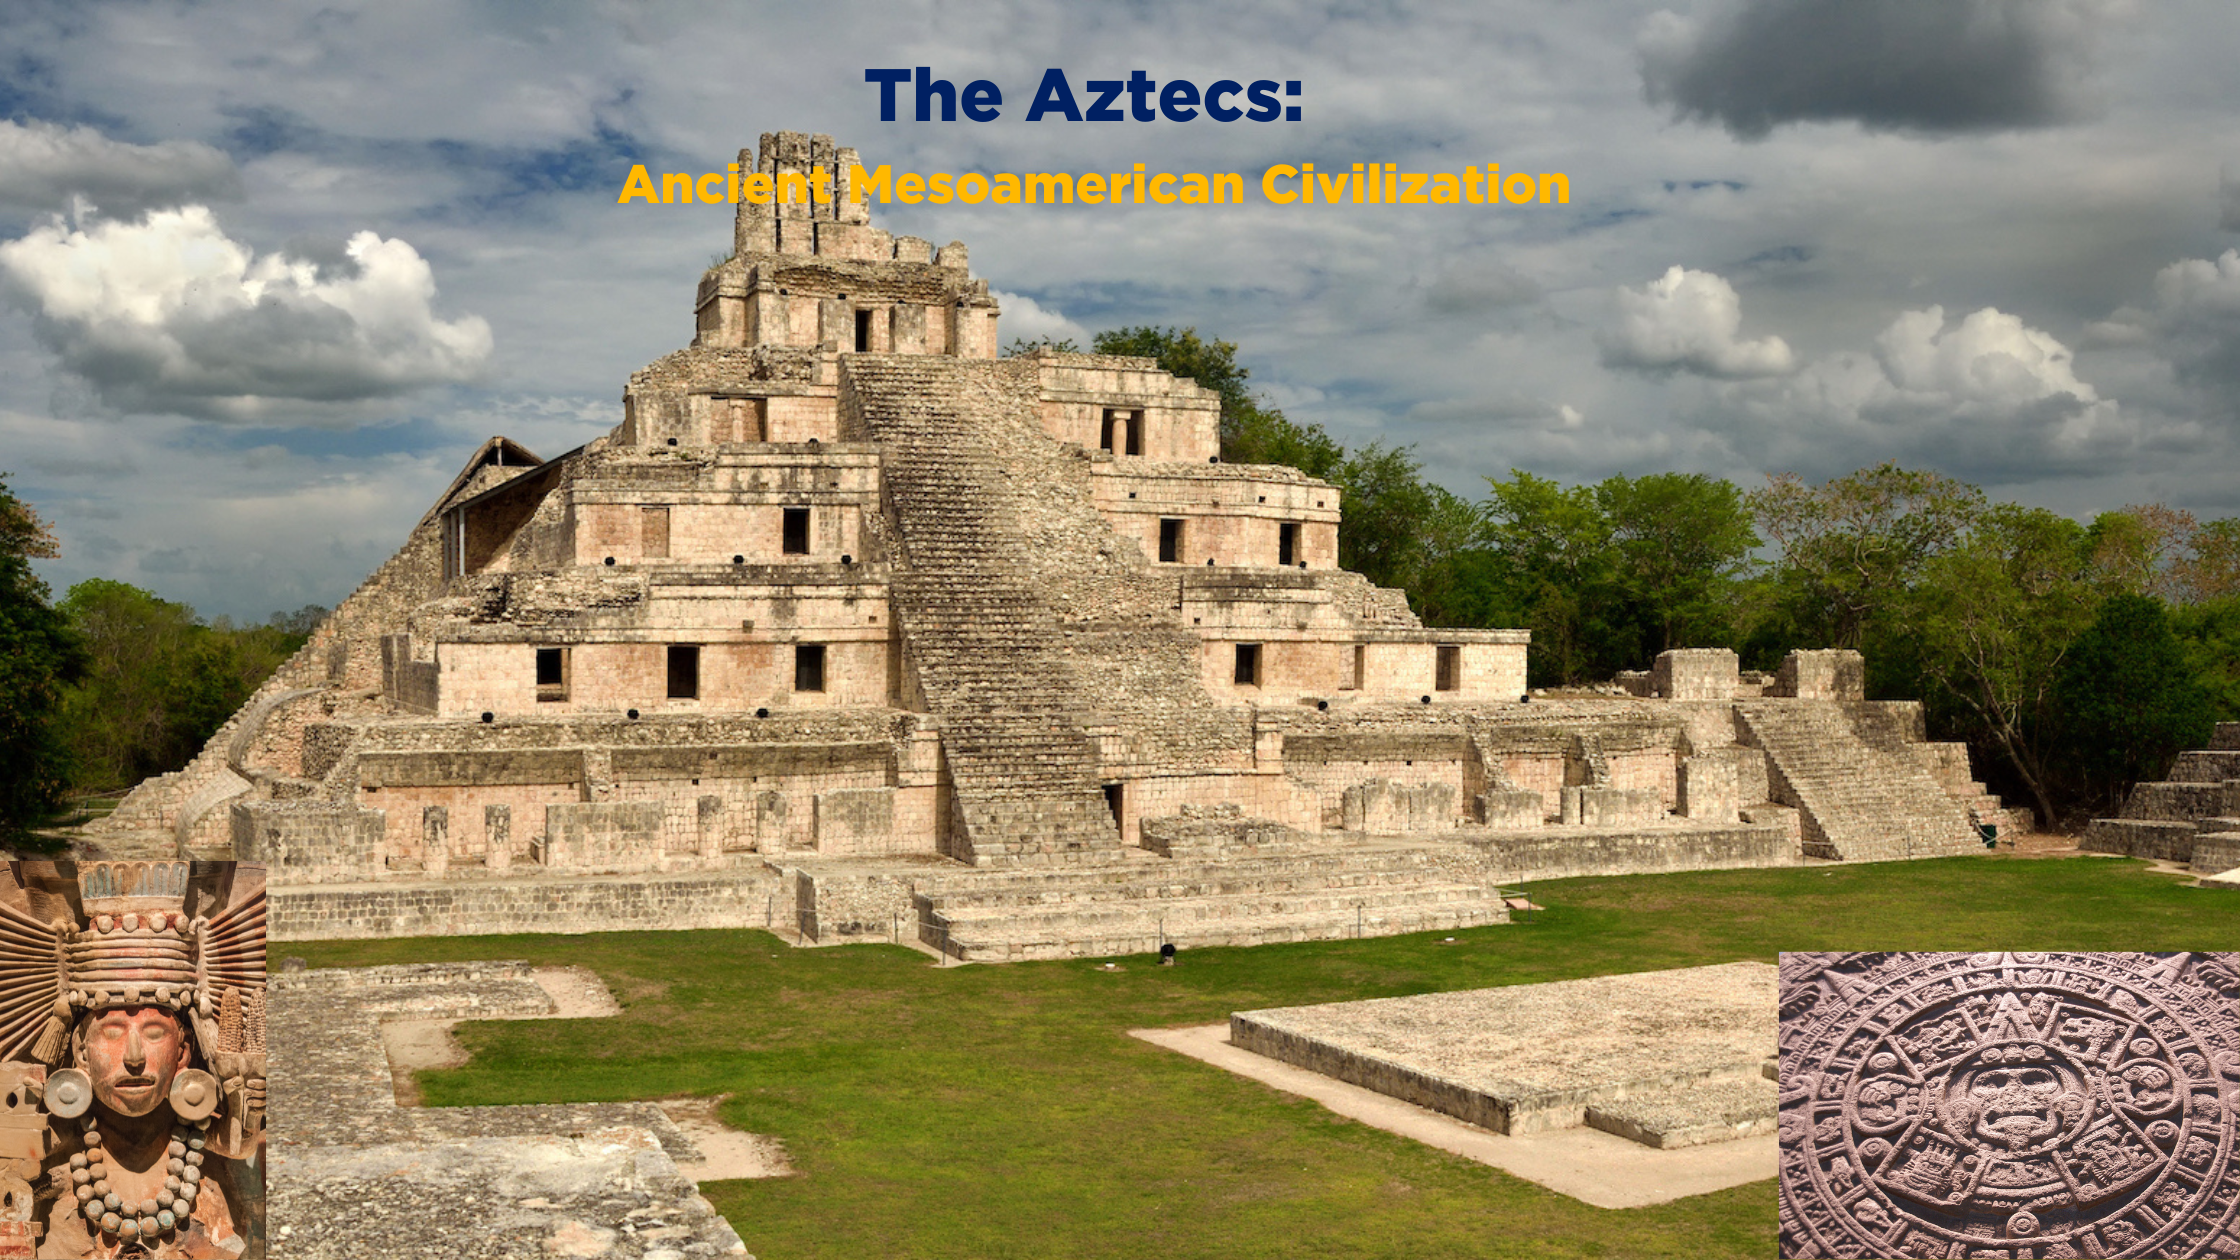 The Aztecs: Ancient Mesoamerican Civilization